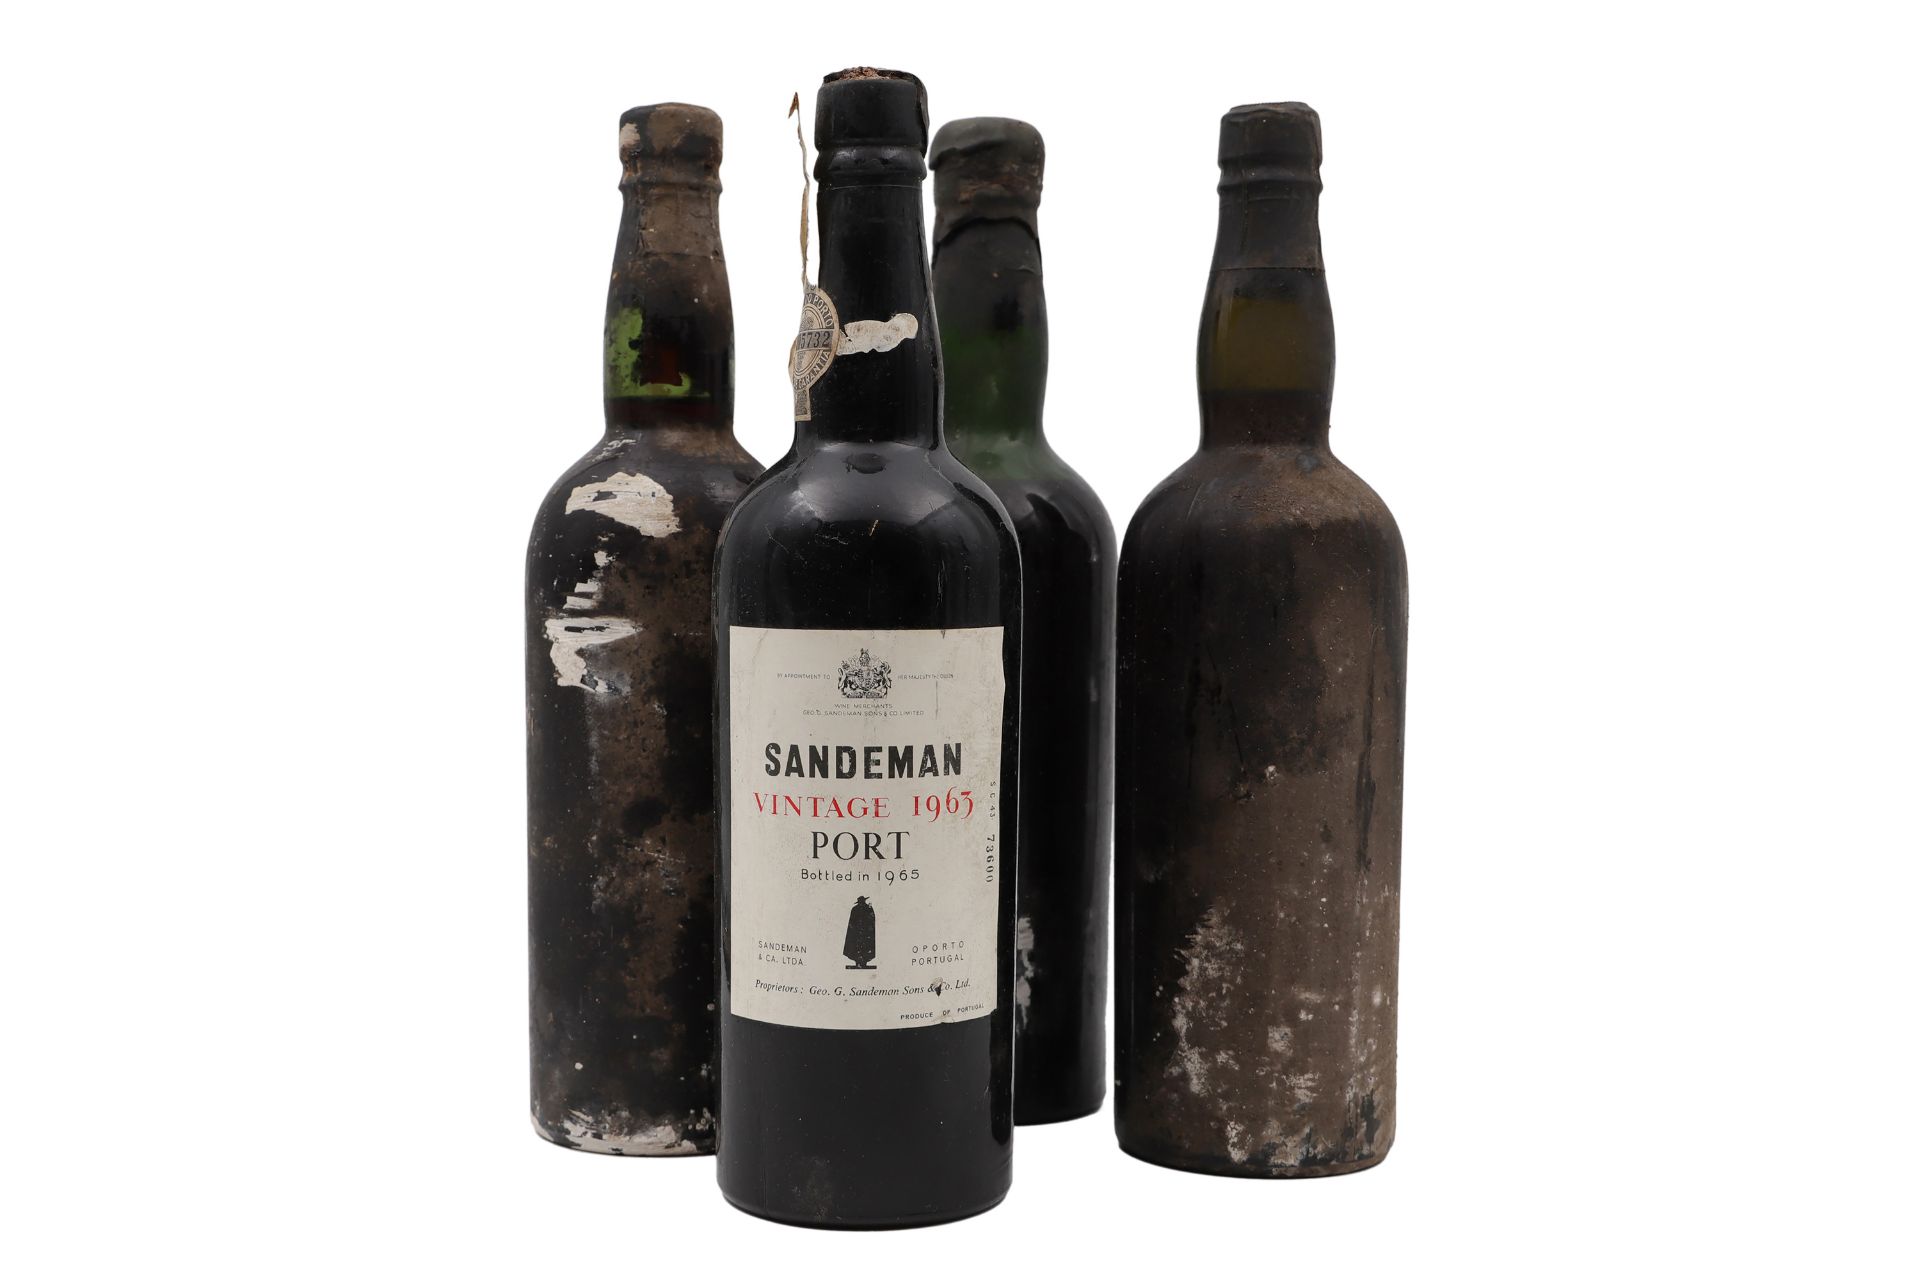 A COLLECTION OF FOUR VINTAGE PORT BOTTLES, to include a bottle of Sandeman Vintage Port 1963 (